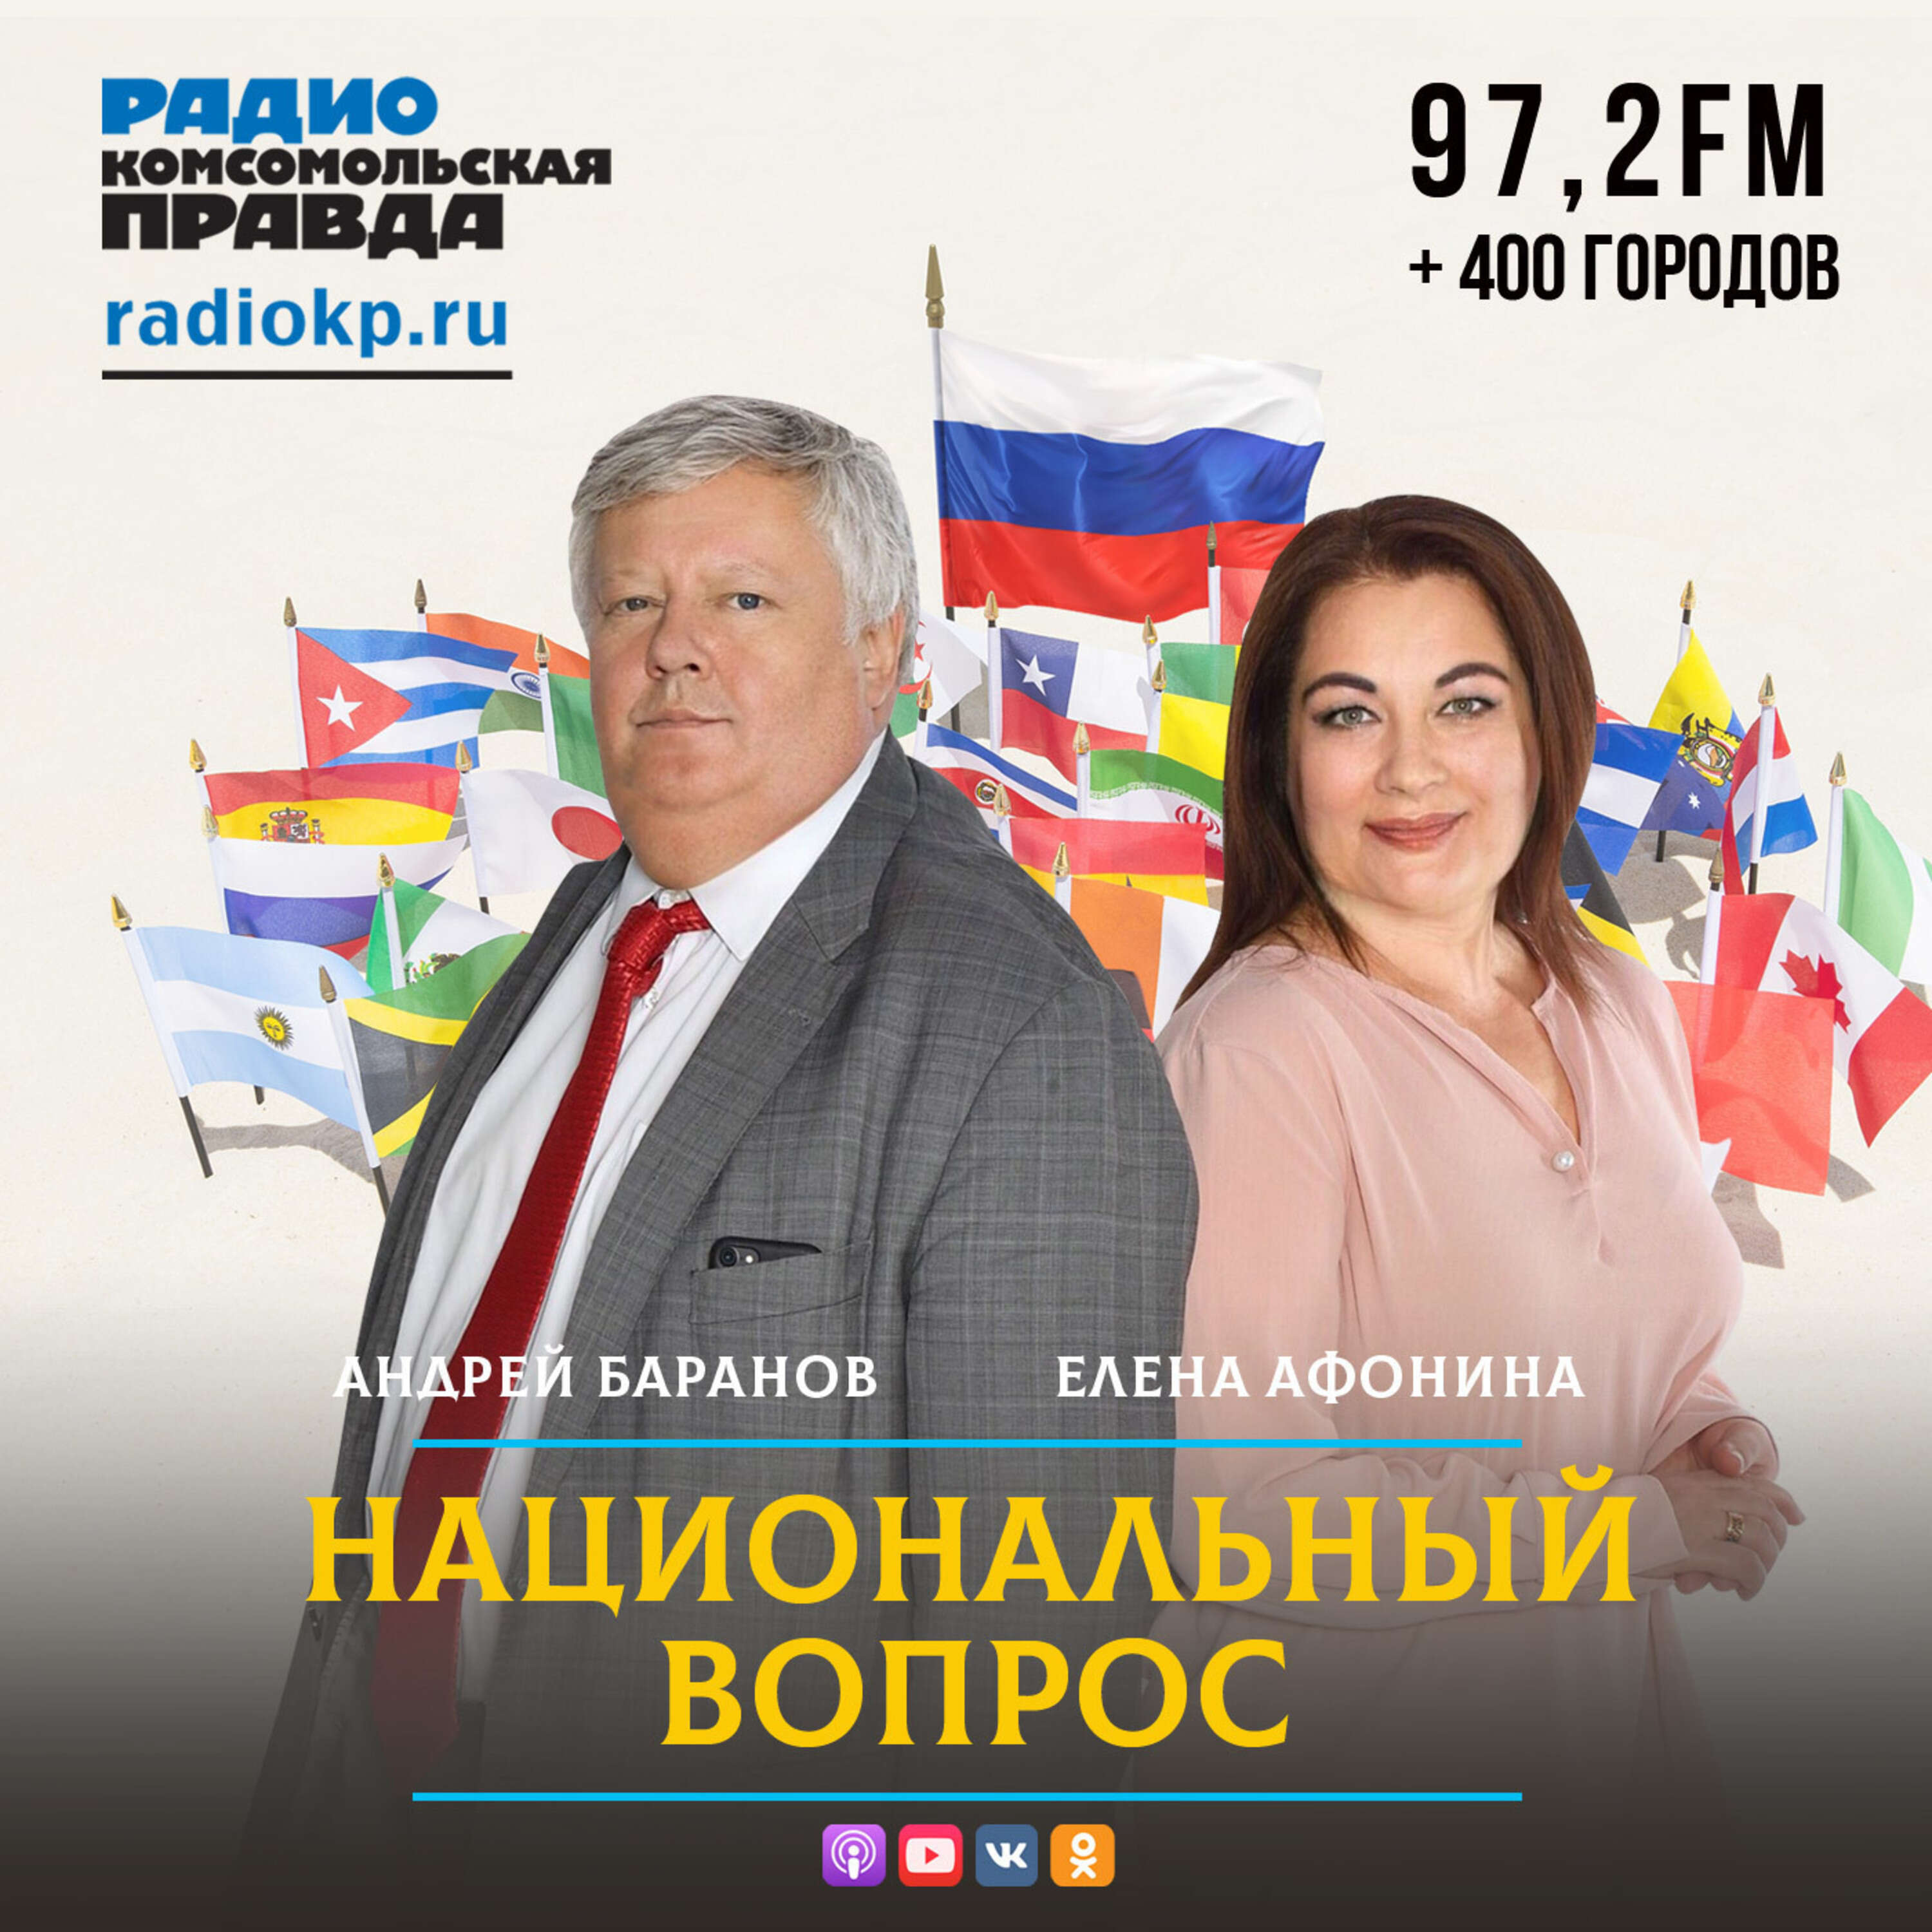 Национальный вопрос:Радио «Комсомольская правда»